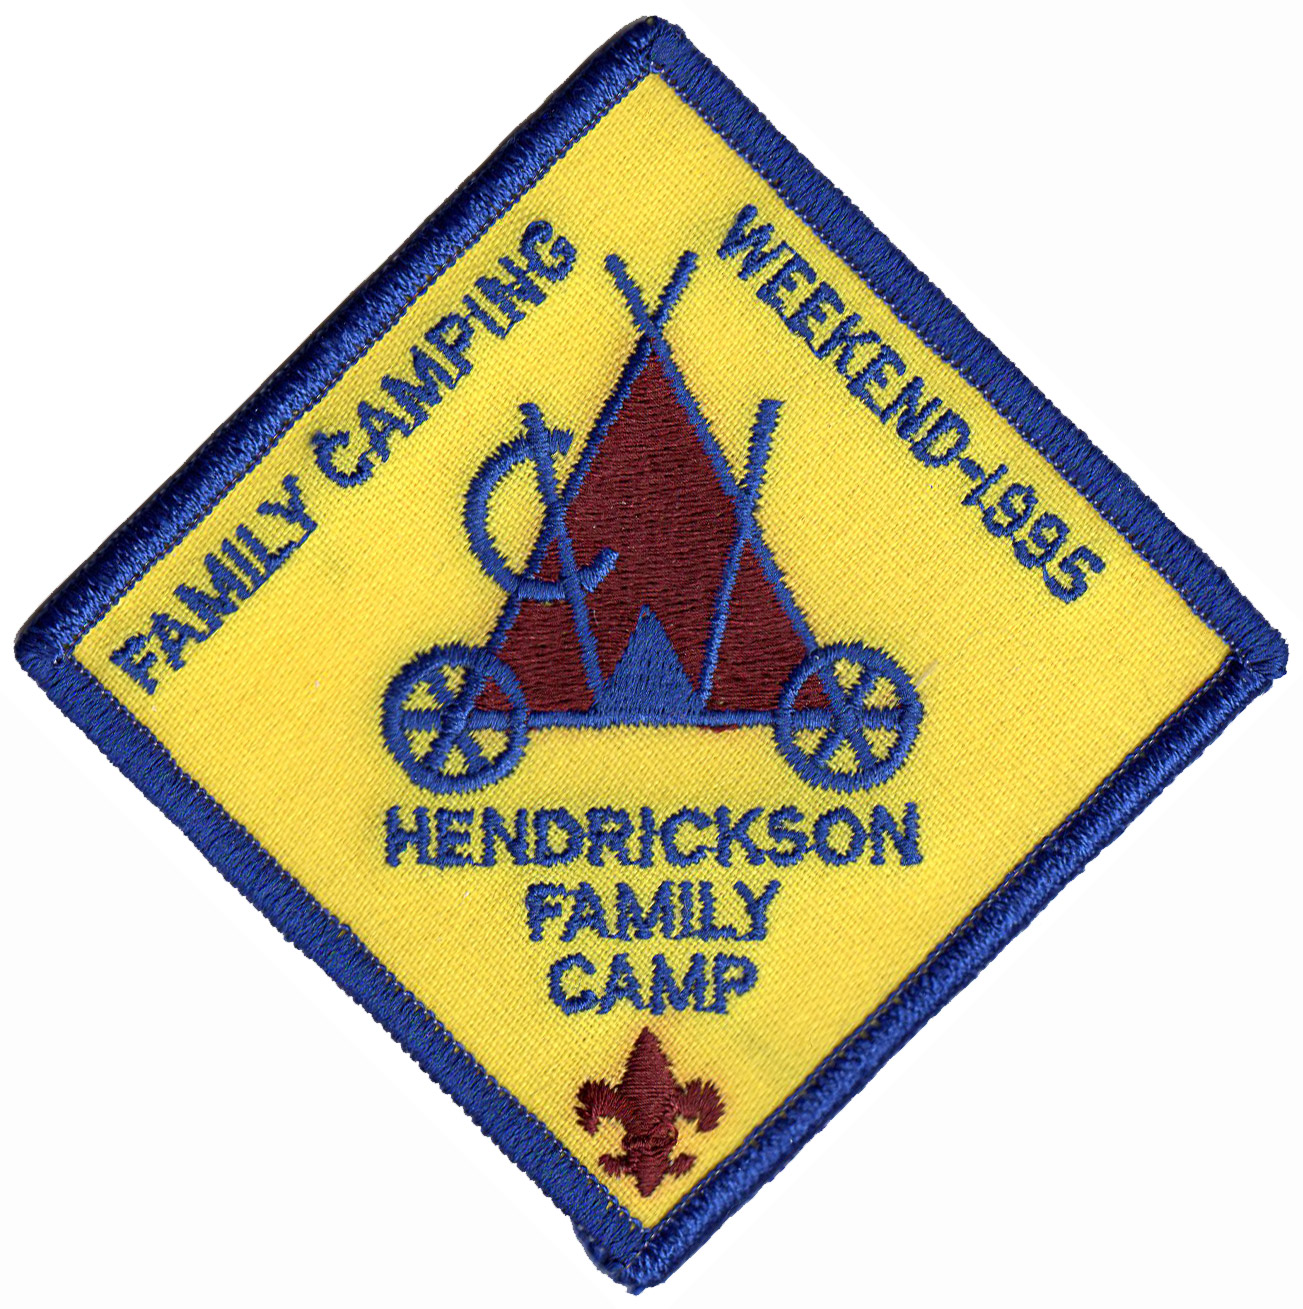 1995 Hendrickson Family Camping